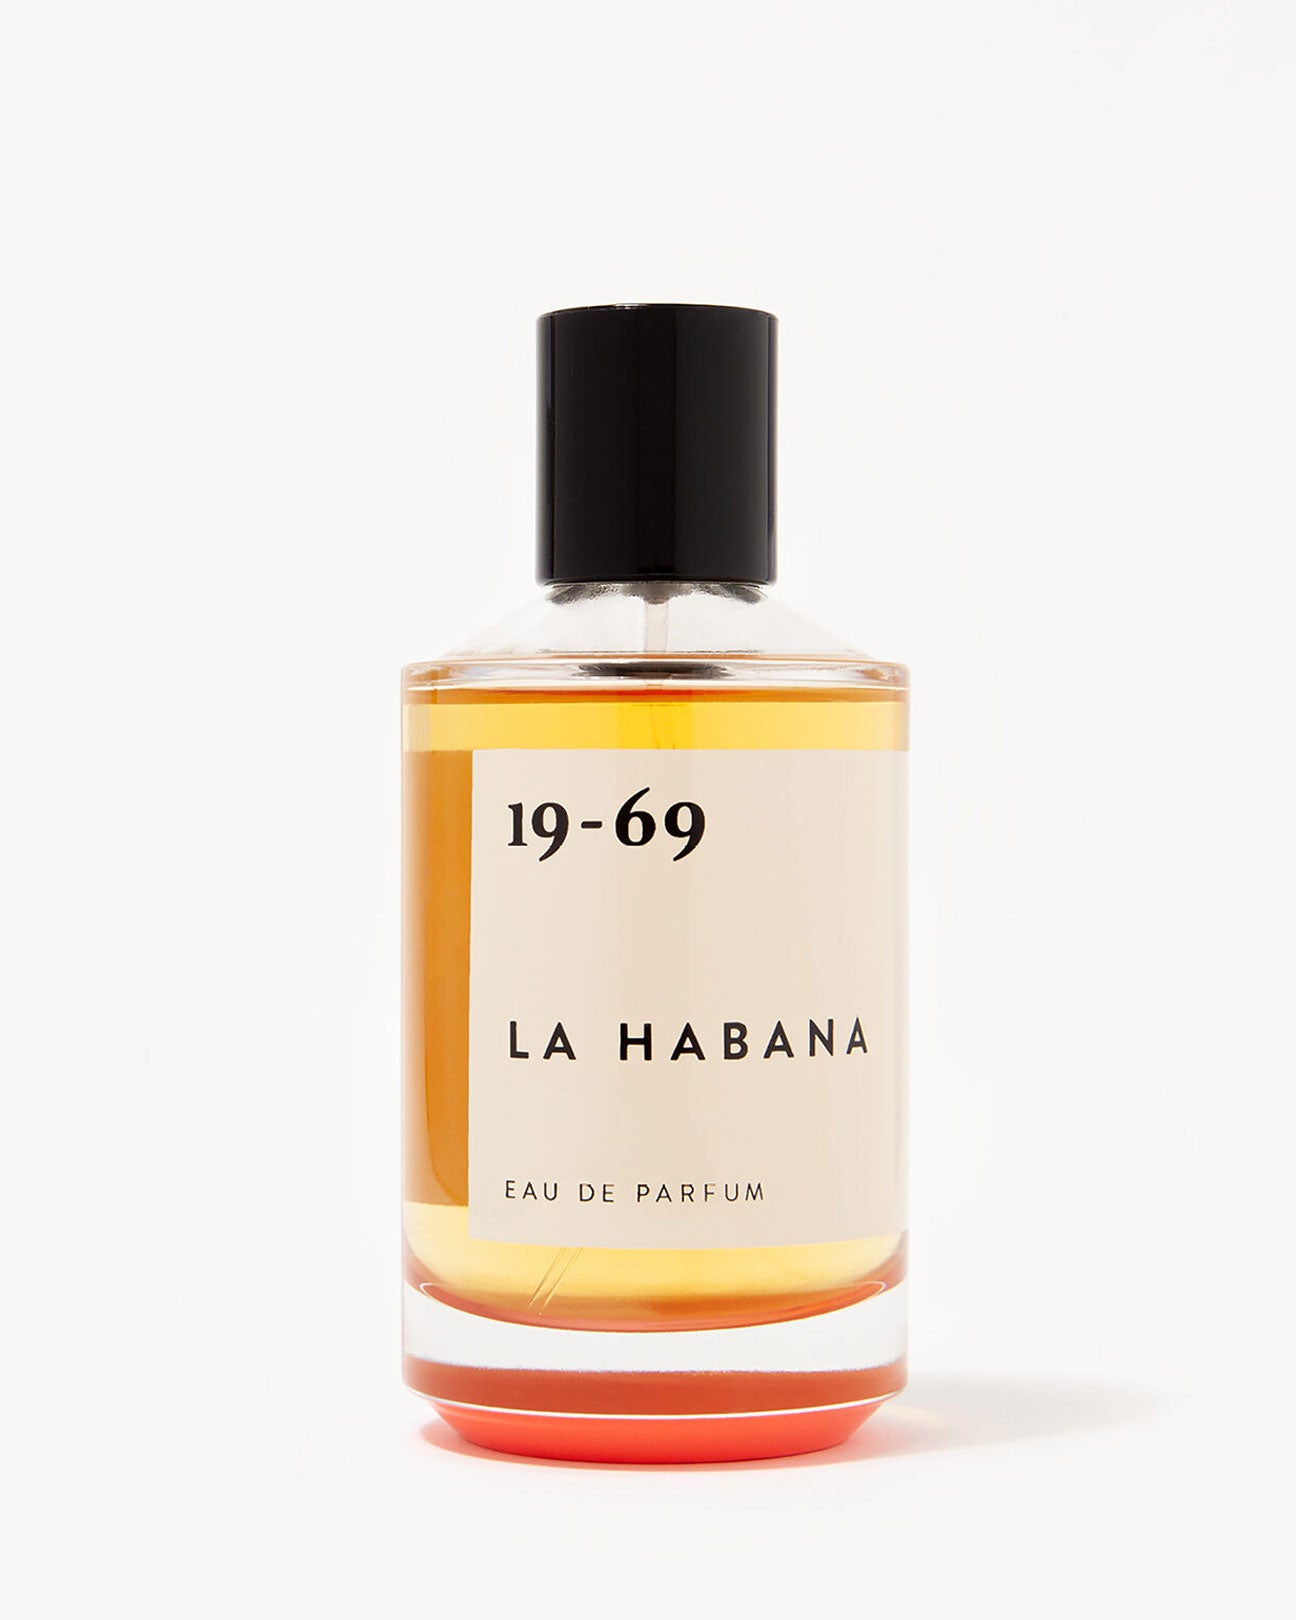 19-69 Eau De Parfum 30ml. in La Habana available at Lahn.shop